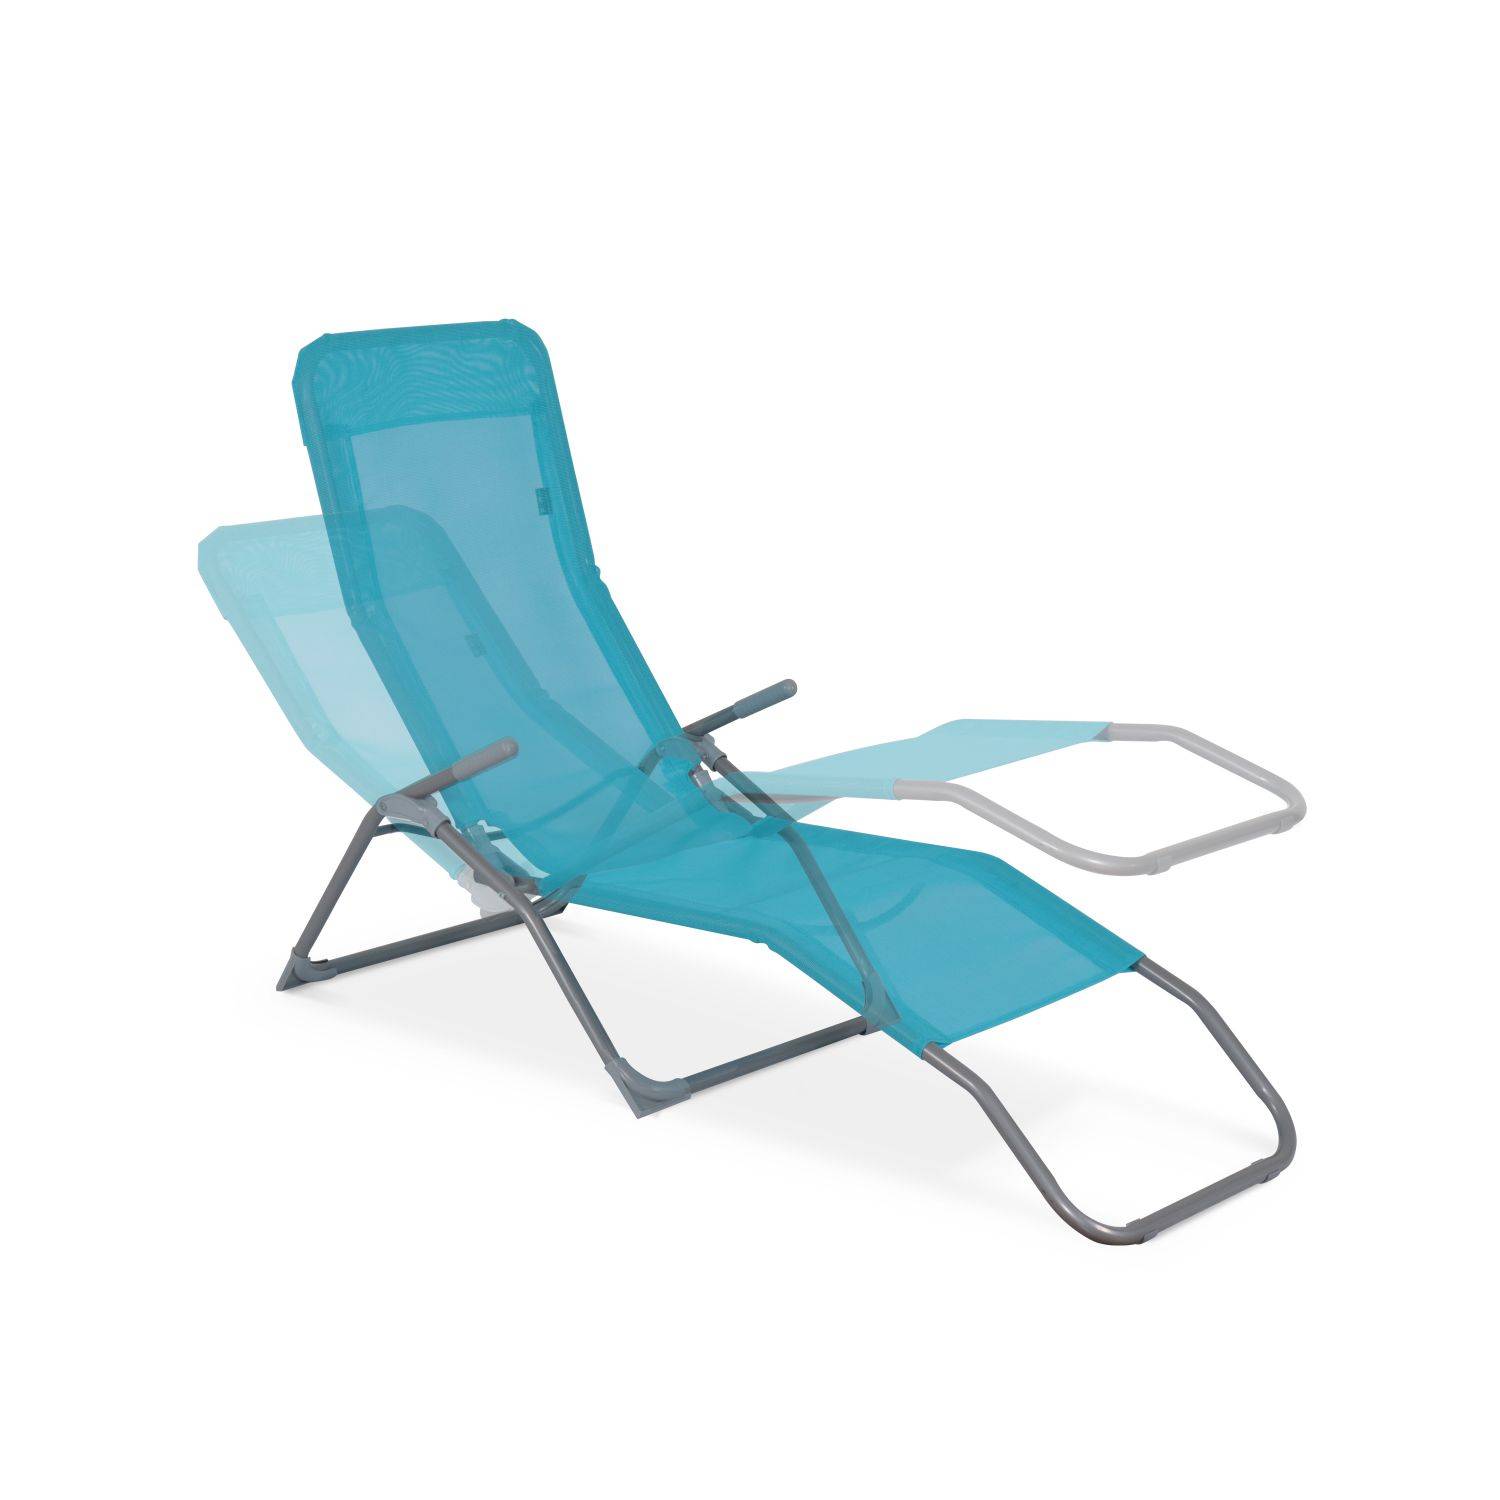 Set van 2 opvouwbare ligstoelen - Levito Turkoois- Ligstoelen van textileen, 2 posities, opvouwbare ligstoelen Photo3